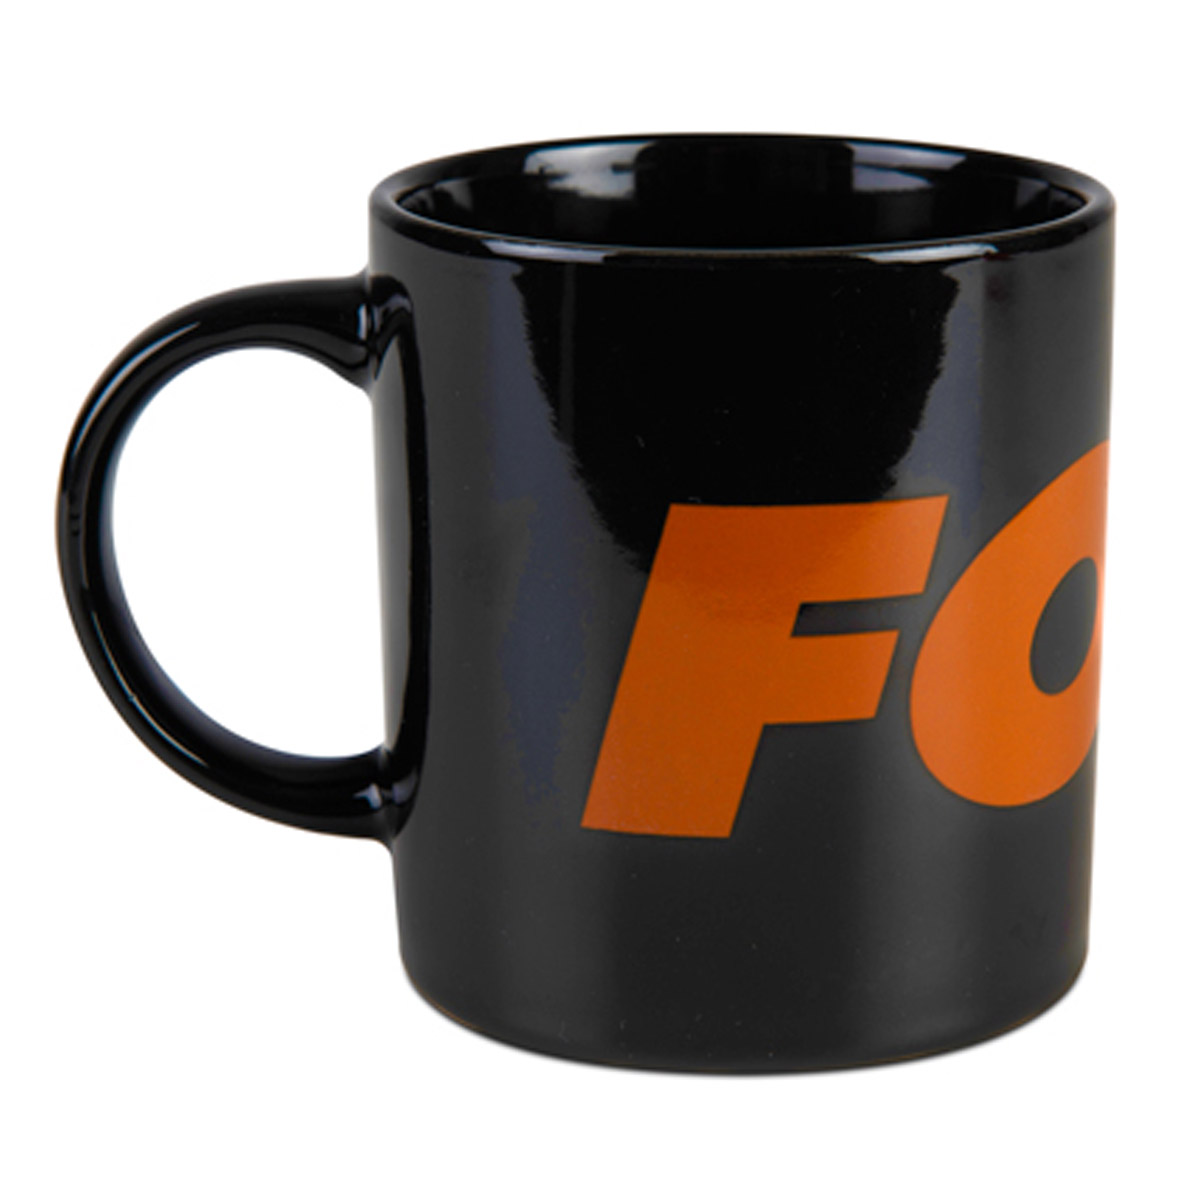 Fox Black & Orange Ceramic Mug